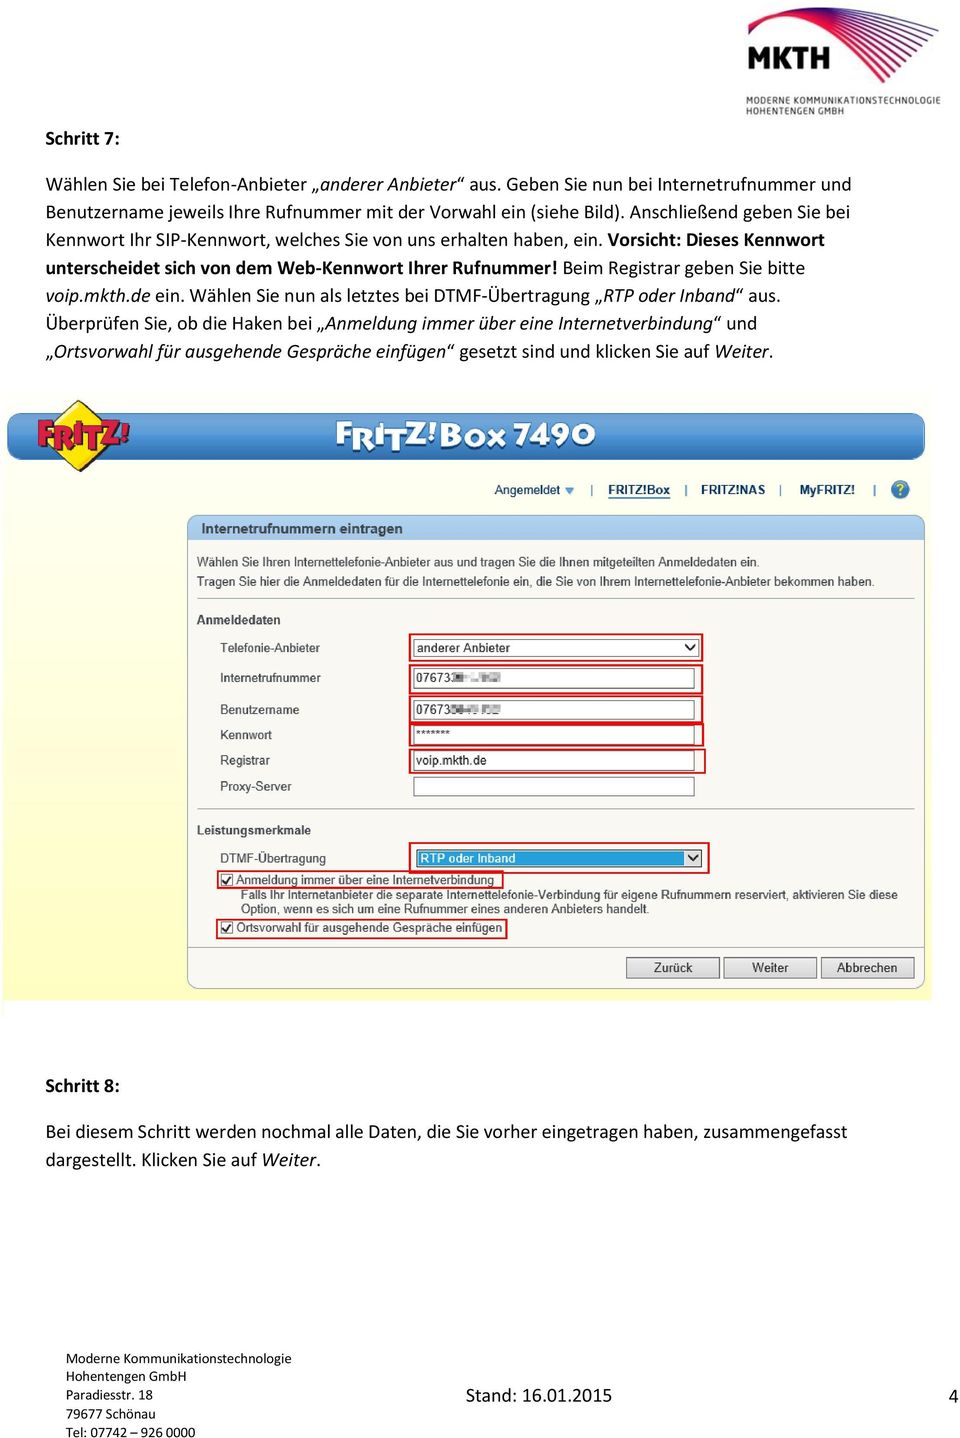 Beim Registrar geben Sie bitte voip.mkth.de ein. Wählen Sie nun als letztes bei DTMF-Übertragung RTP oder Inband aus.